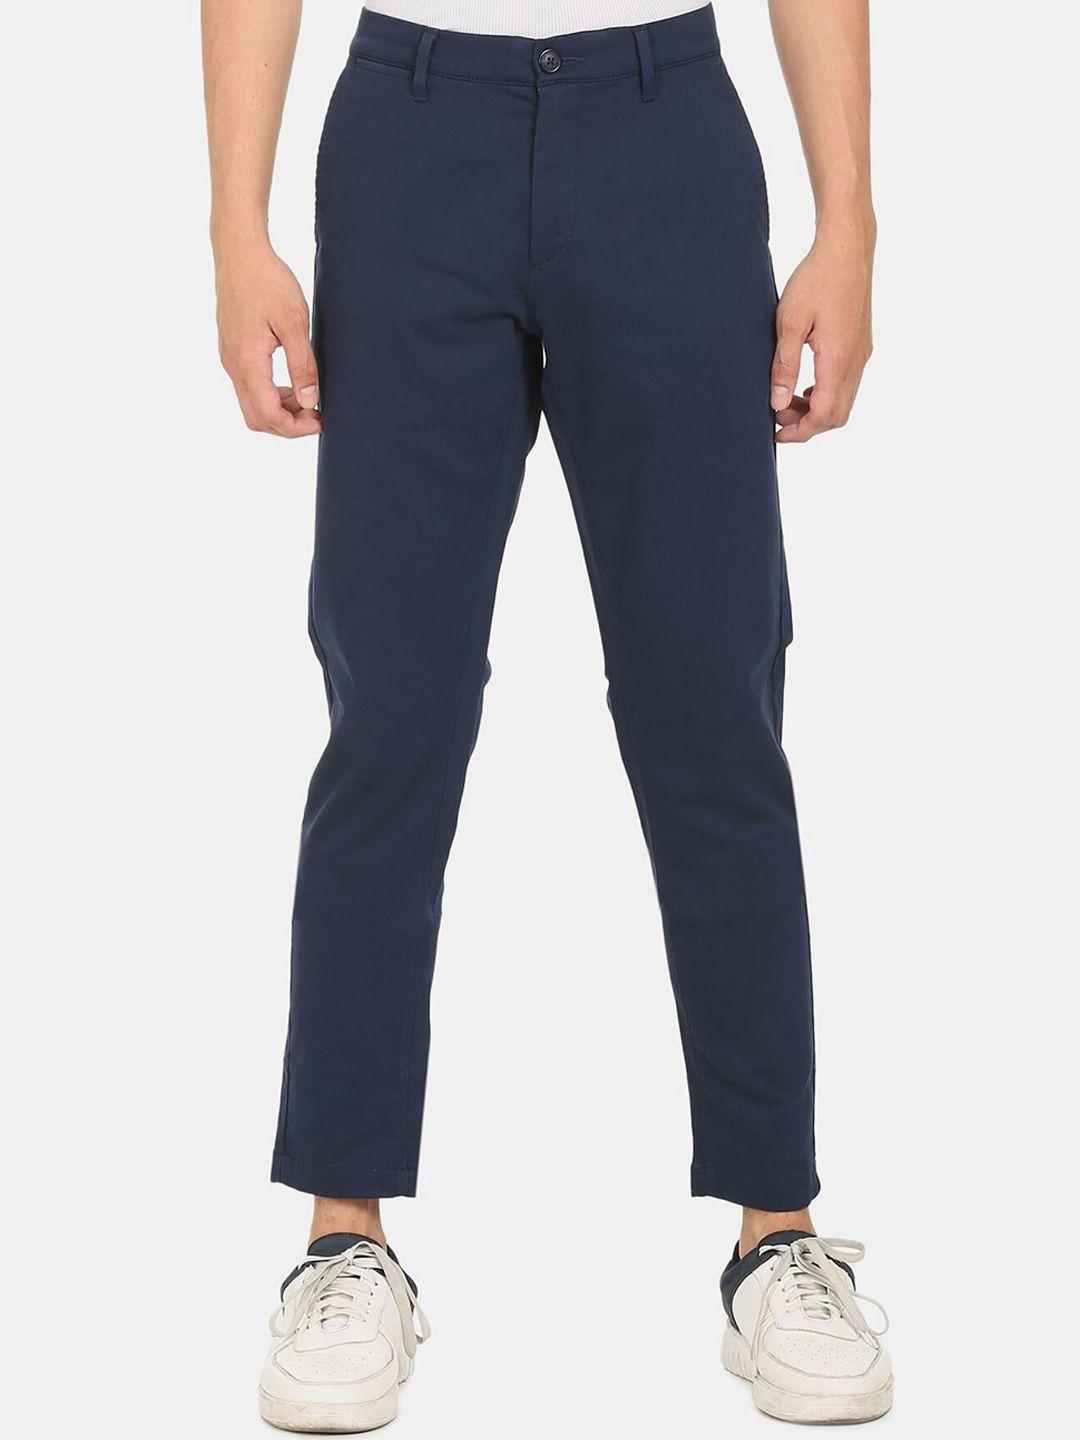 u.s. polo assn. men navy blue trousers